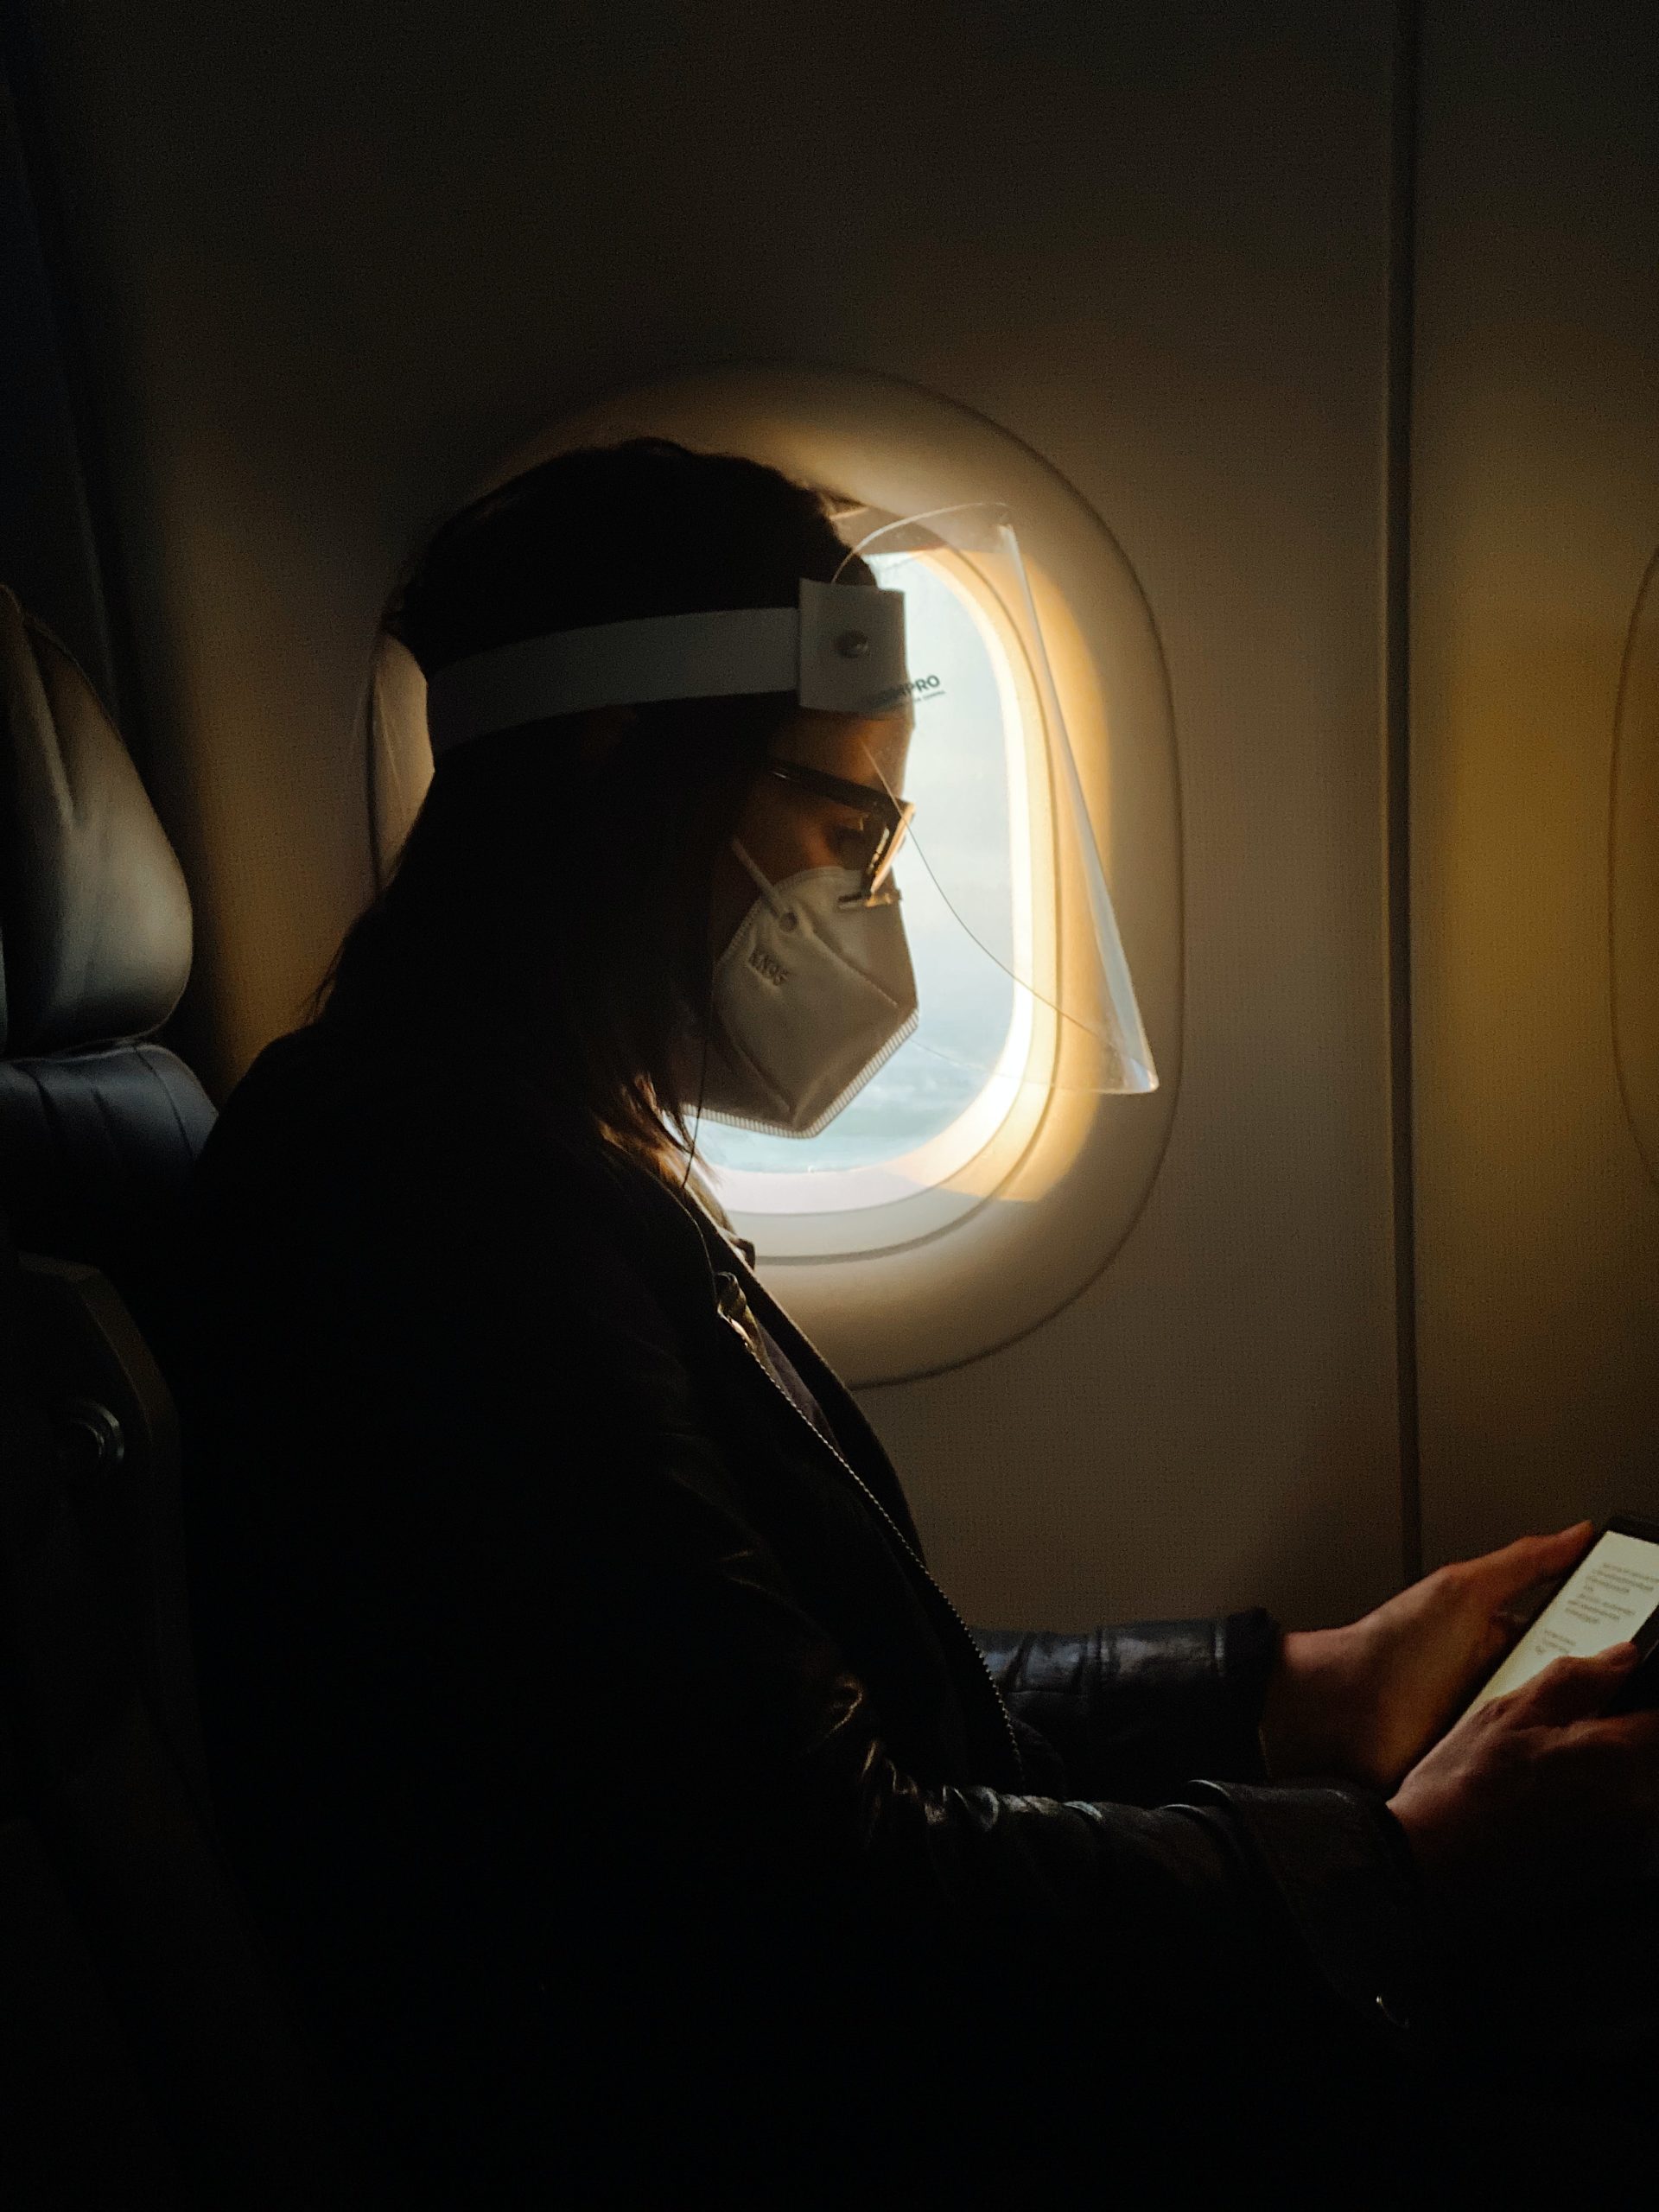 Un pasajero del avión usa una máscara facial y un protector facial.